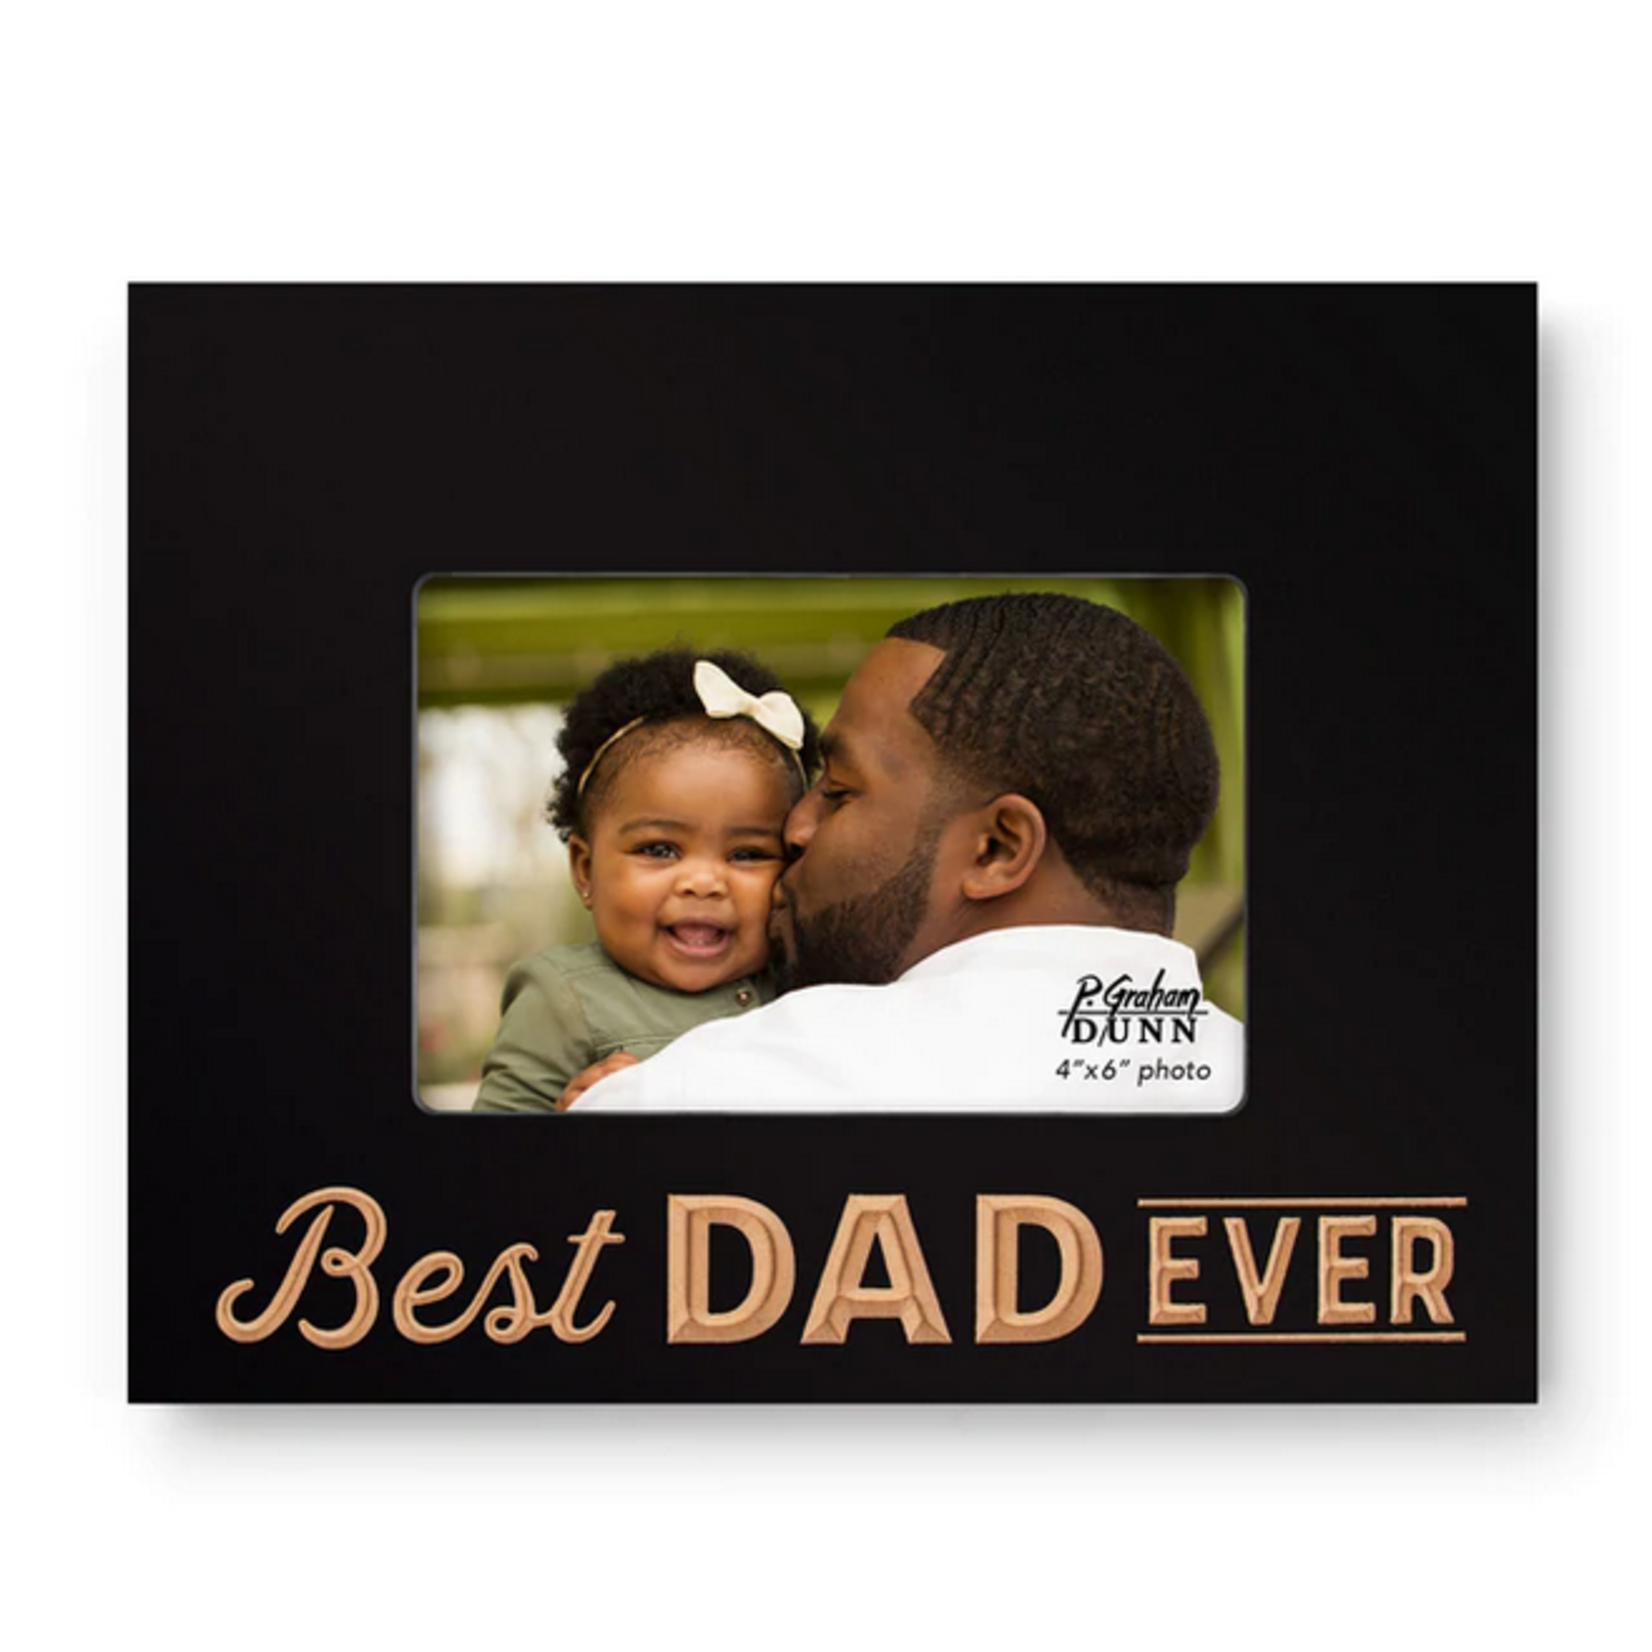 Best Dad Ever Frame 4x6